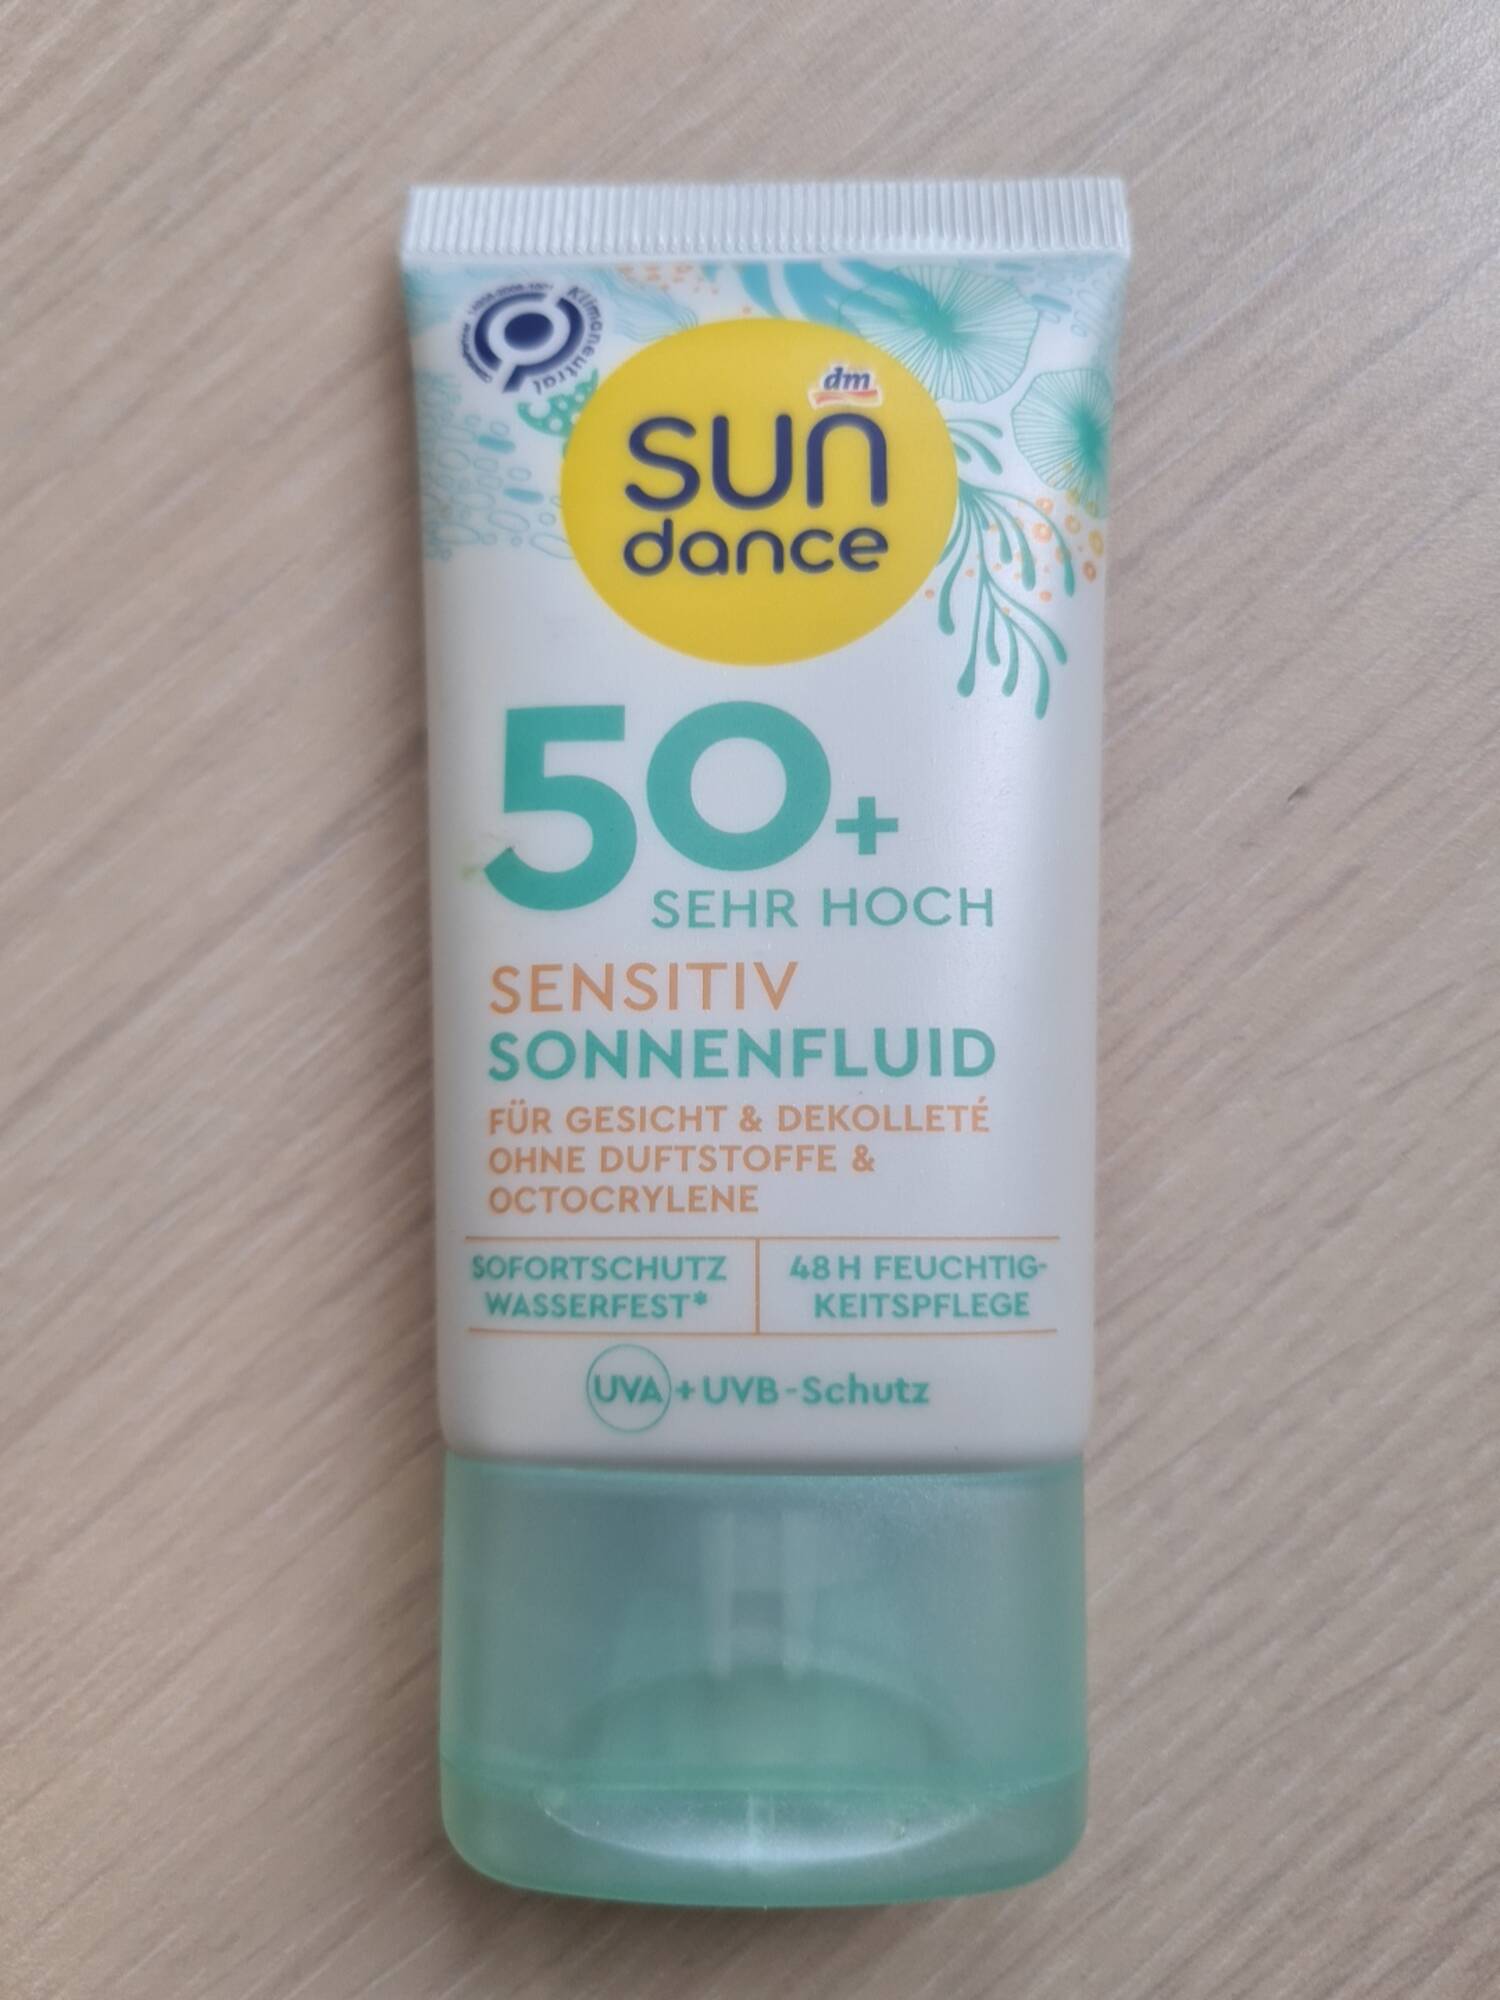 SUN DANCE DM - Sensitiv sonnenfluid 50+ sehr hoch - Crème solaire